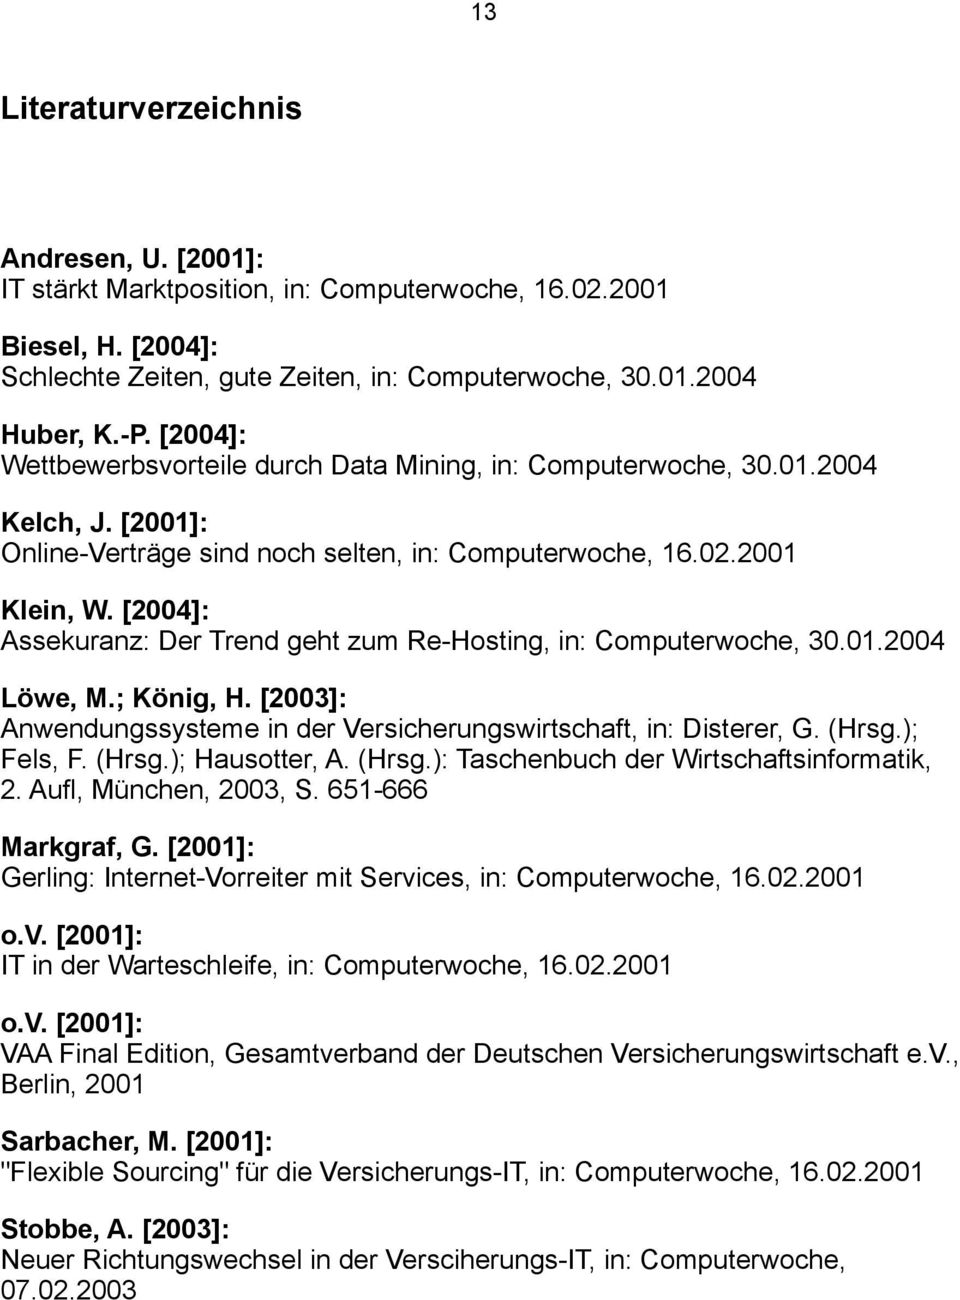 [2004]: Assekuranz: Der Trend geht zum Re-Hosting, in: Computerwoche, 30.01.2004 Löwe, M.; König, H. [2003]: Anwendungssysteme in der Versicherungswirtschaft, in: Disterer, G. (Hrsg.); Fels, F. (Hrsg.); Hausotter, A.